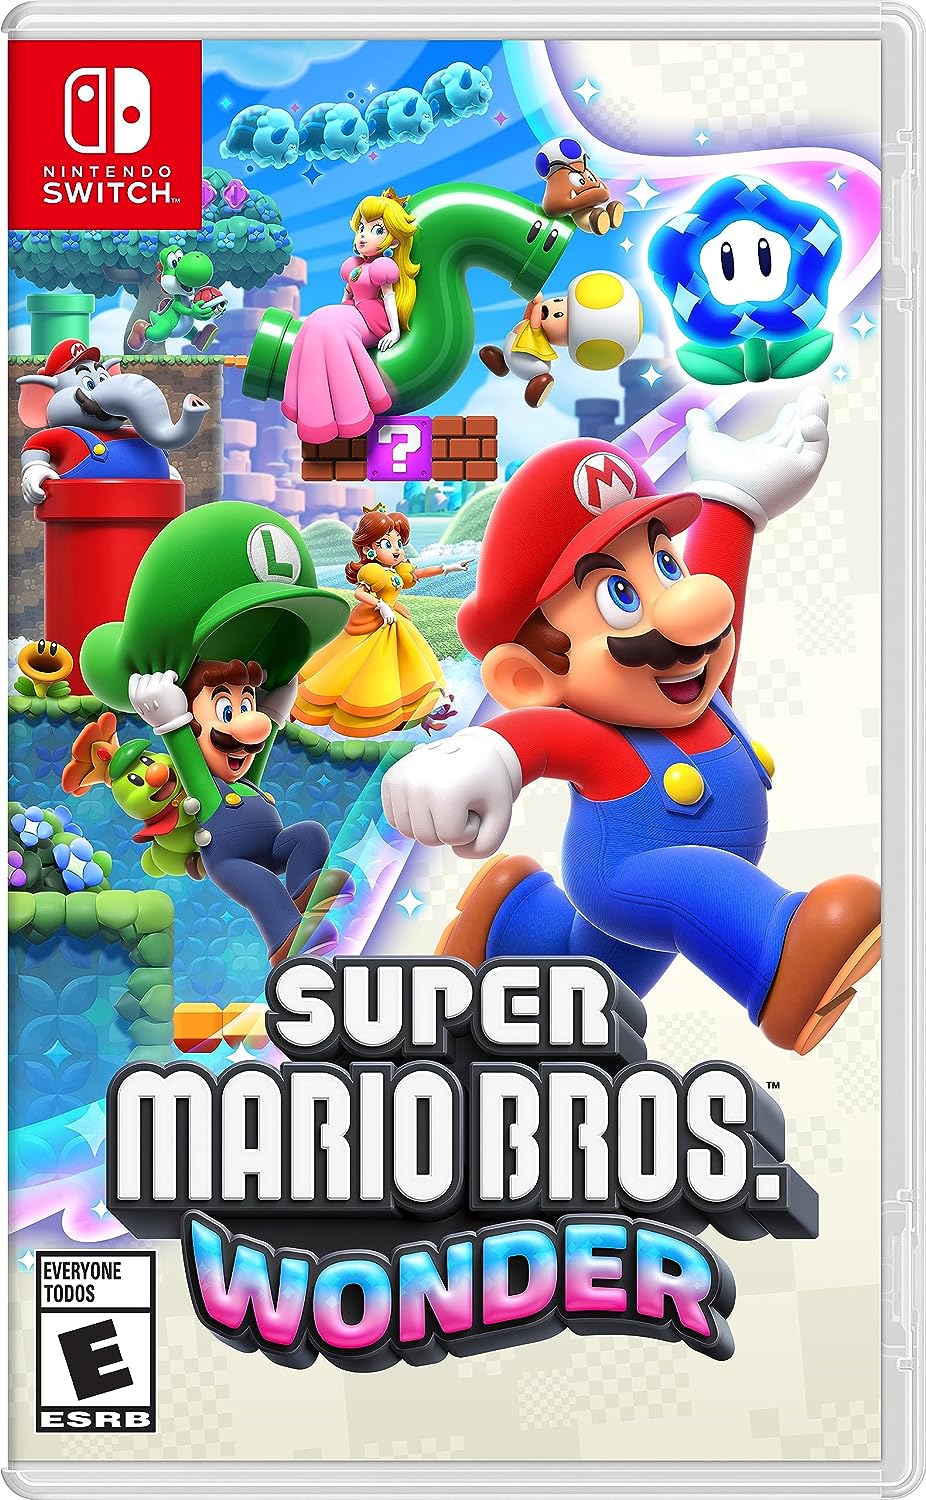 Super Mario Odyssey - Bowser's Kingdom Walkthrough [HD 1080P/60FPS